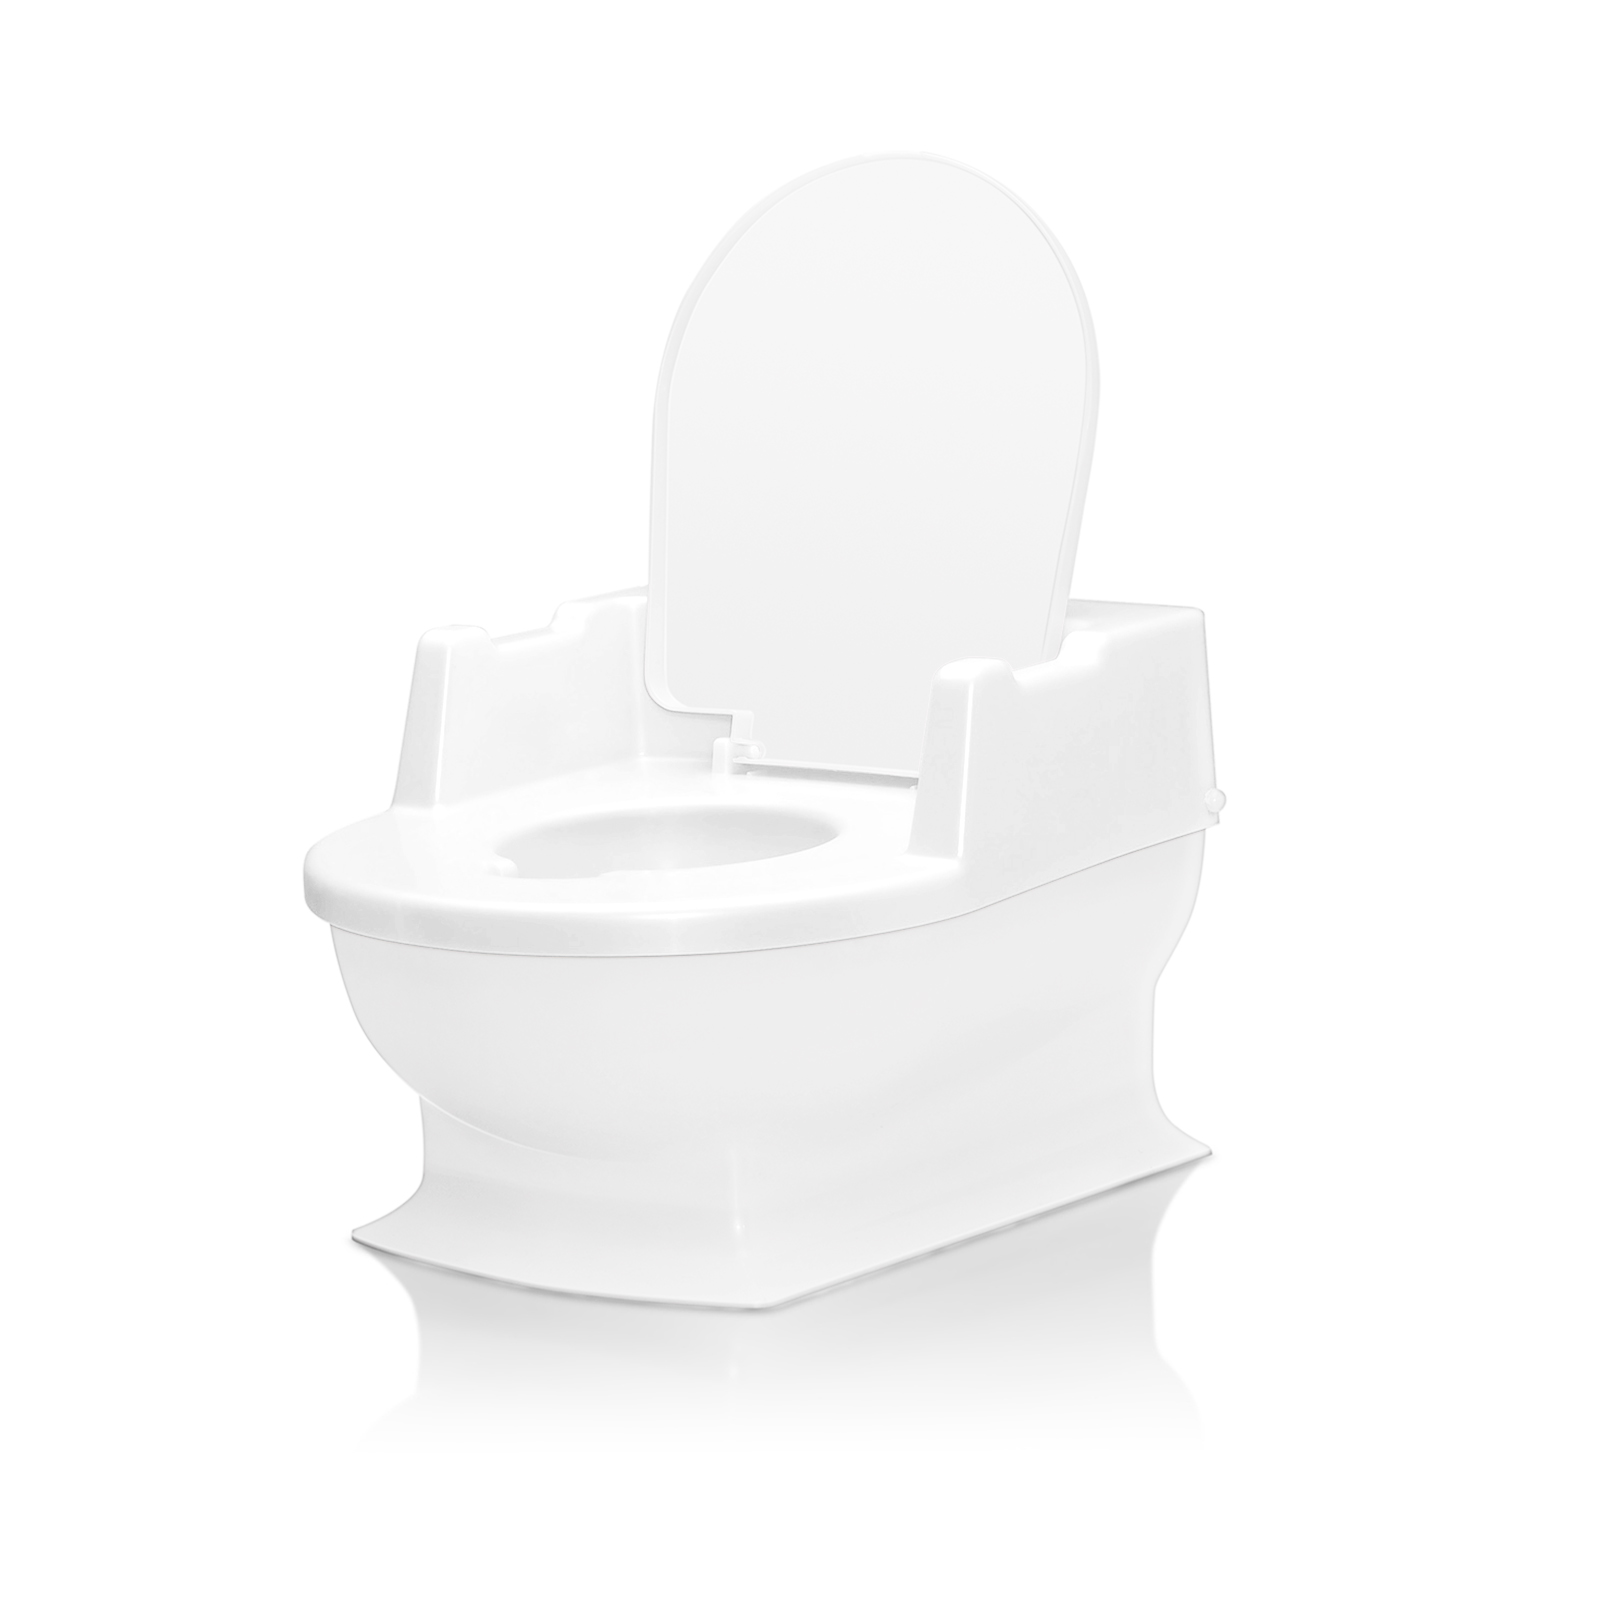 Sitzfritz - Die Mini-Toilette zum Großwerden, weiß